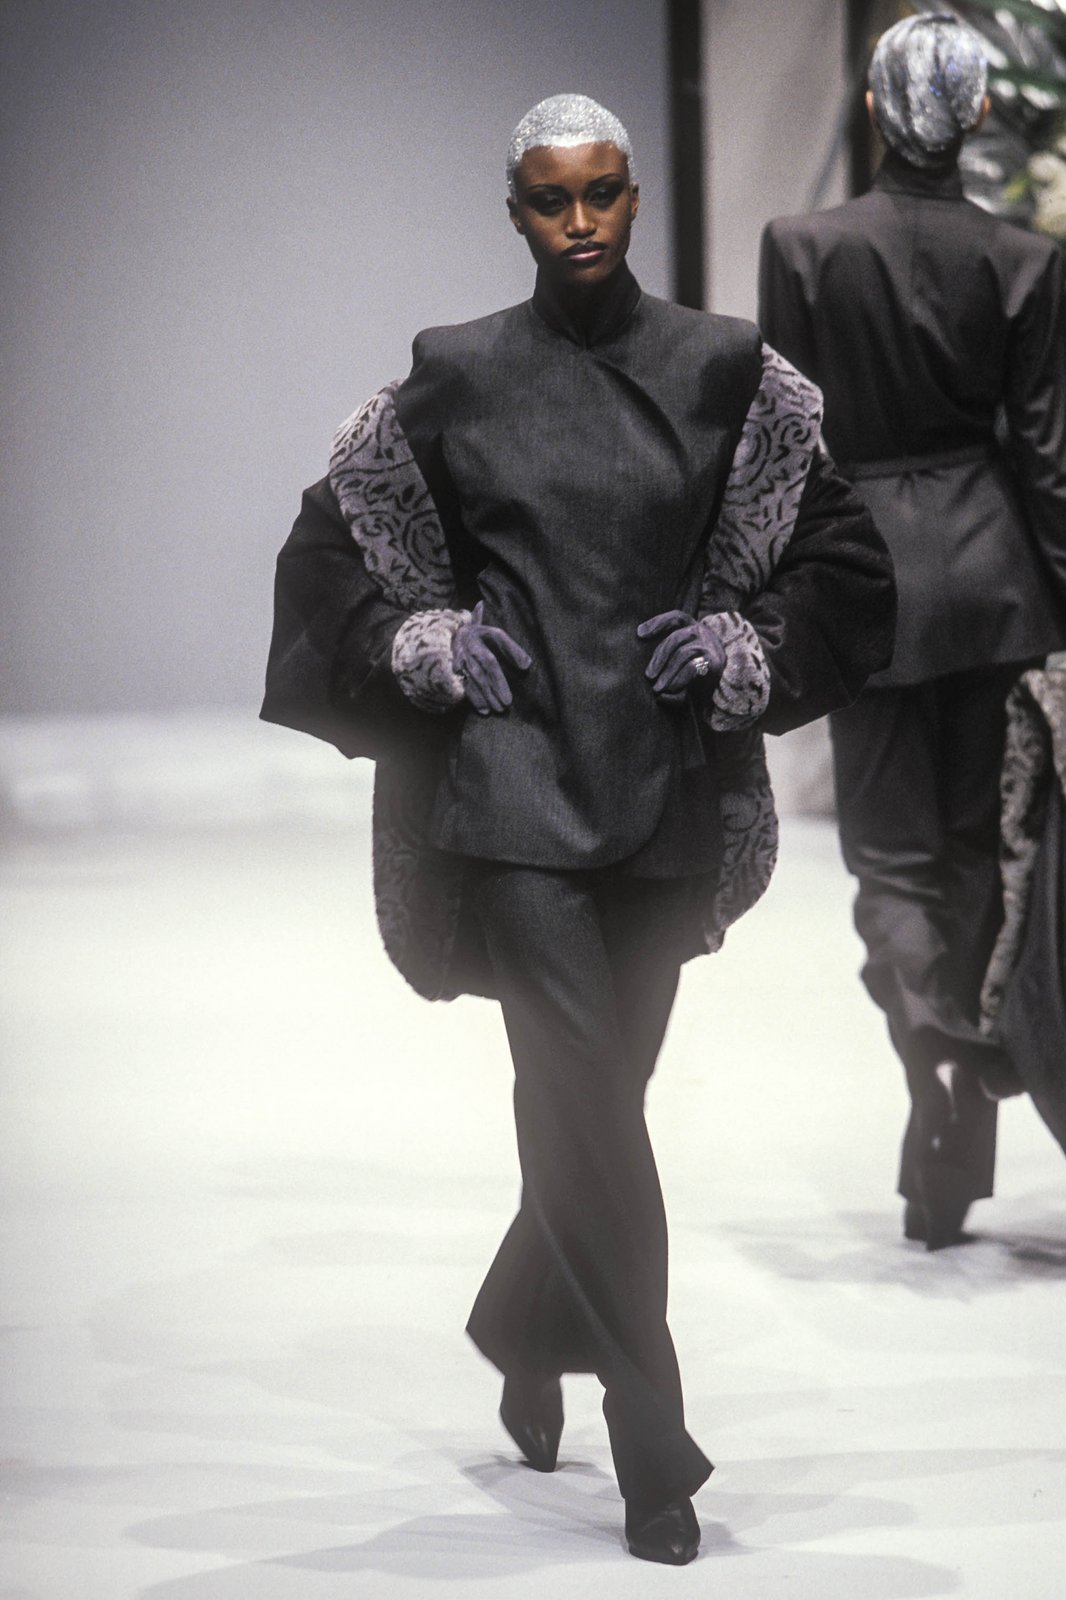 Fashion Classic: Jean Louis Scherrer Haute Couture Fall/Winter 1997